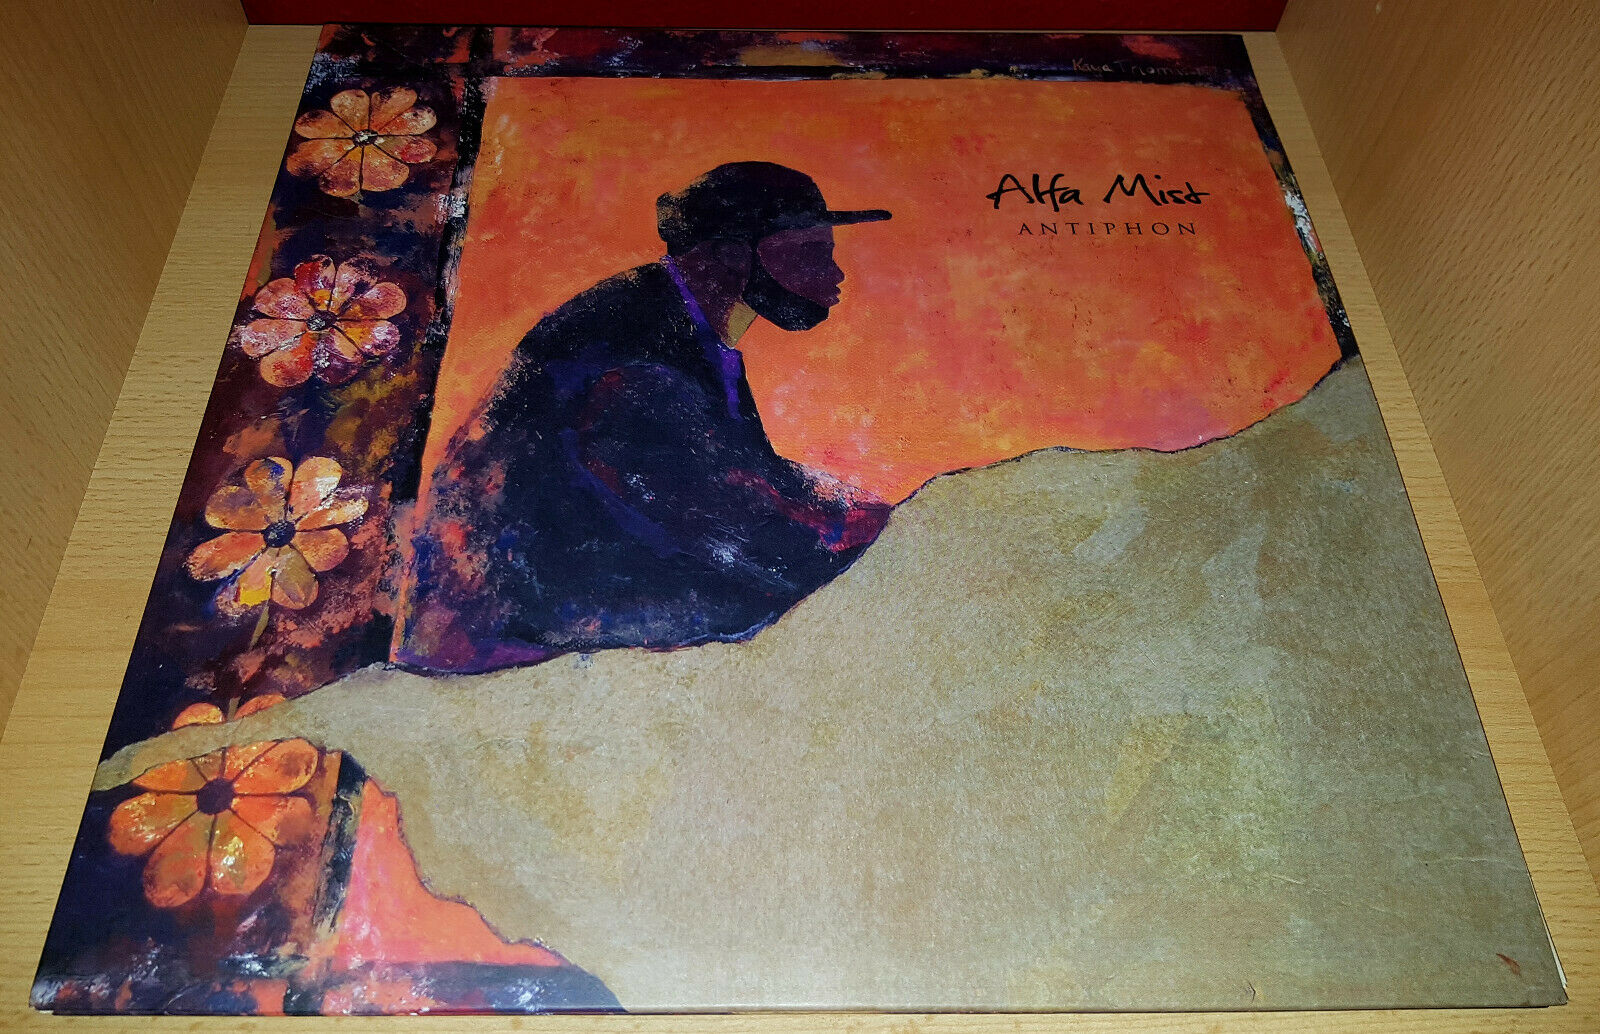 popsike.com - Alfa Mist ?– Antiphon - 2xLP Limited Edition Orange Vinyl - Acre - auction details